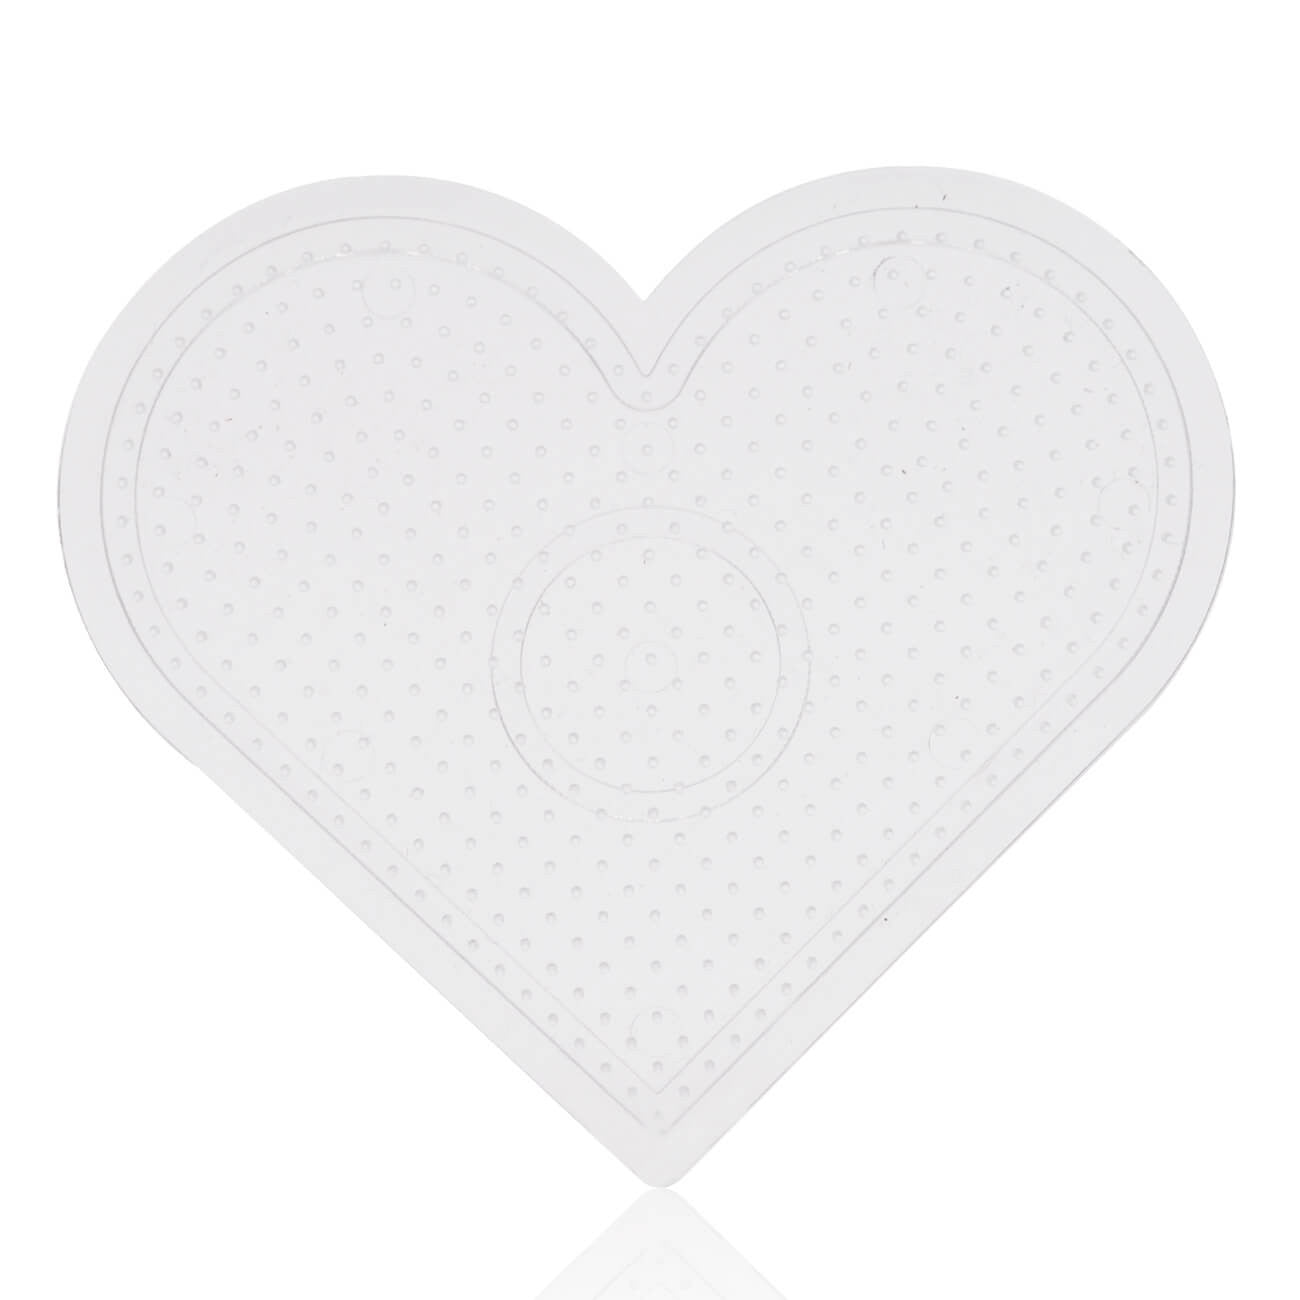 لوحة ربط القلب الصغيرة الشفافة من Artkal للخرز الصغير 2.6 مللي متر CP03